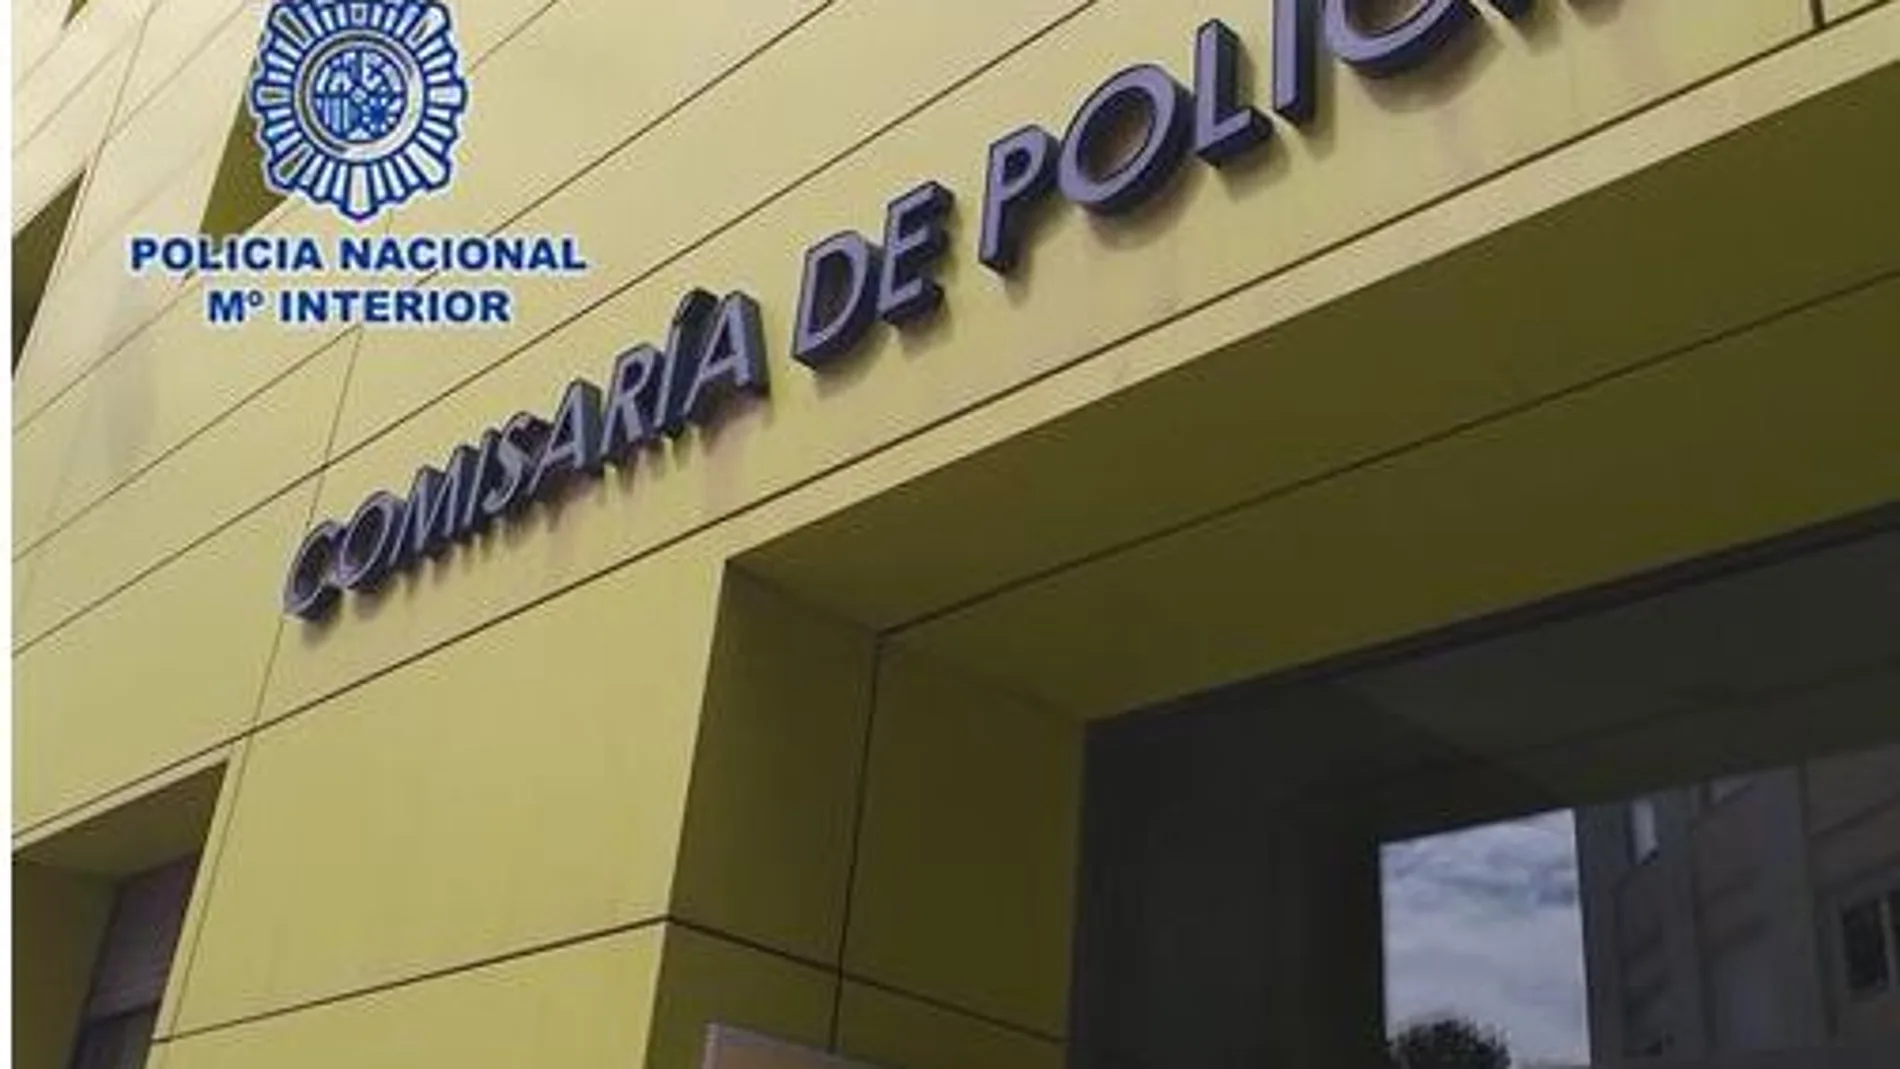 Comisaría de Policía de Cartagena